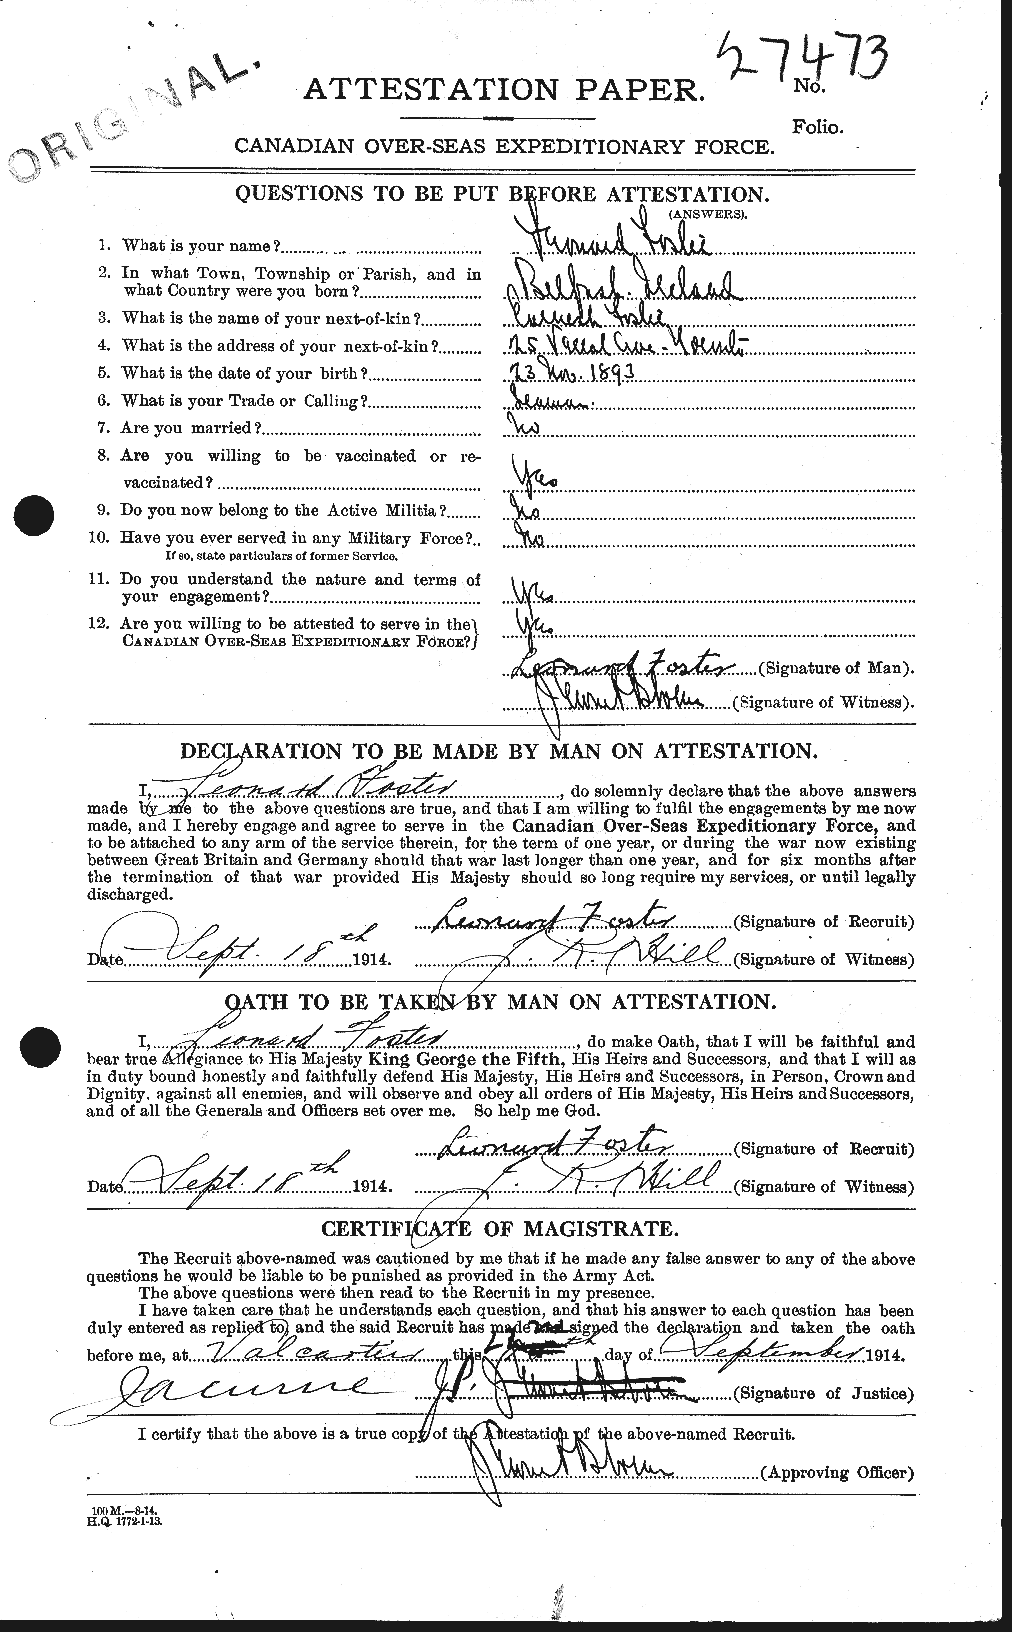 Dossiers du Personnel de la Première Guerre mondiale - CEC 333402a